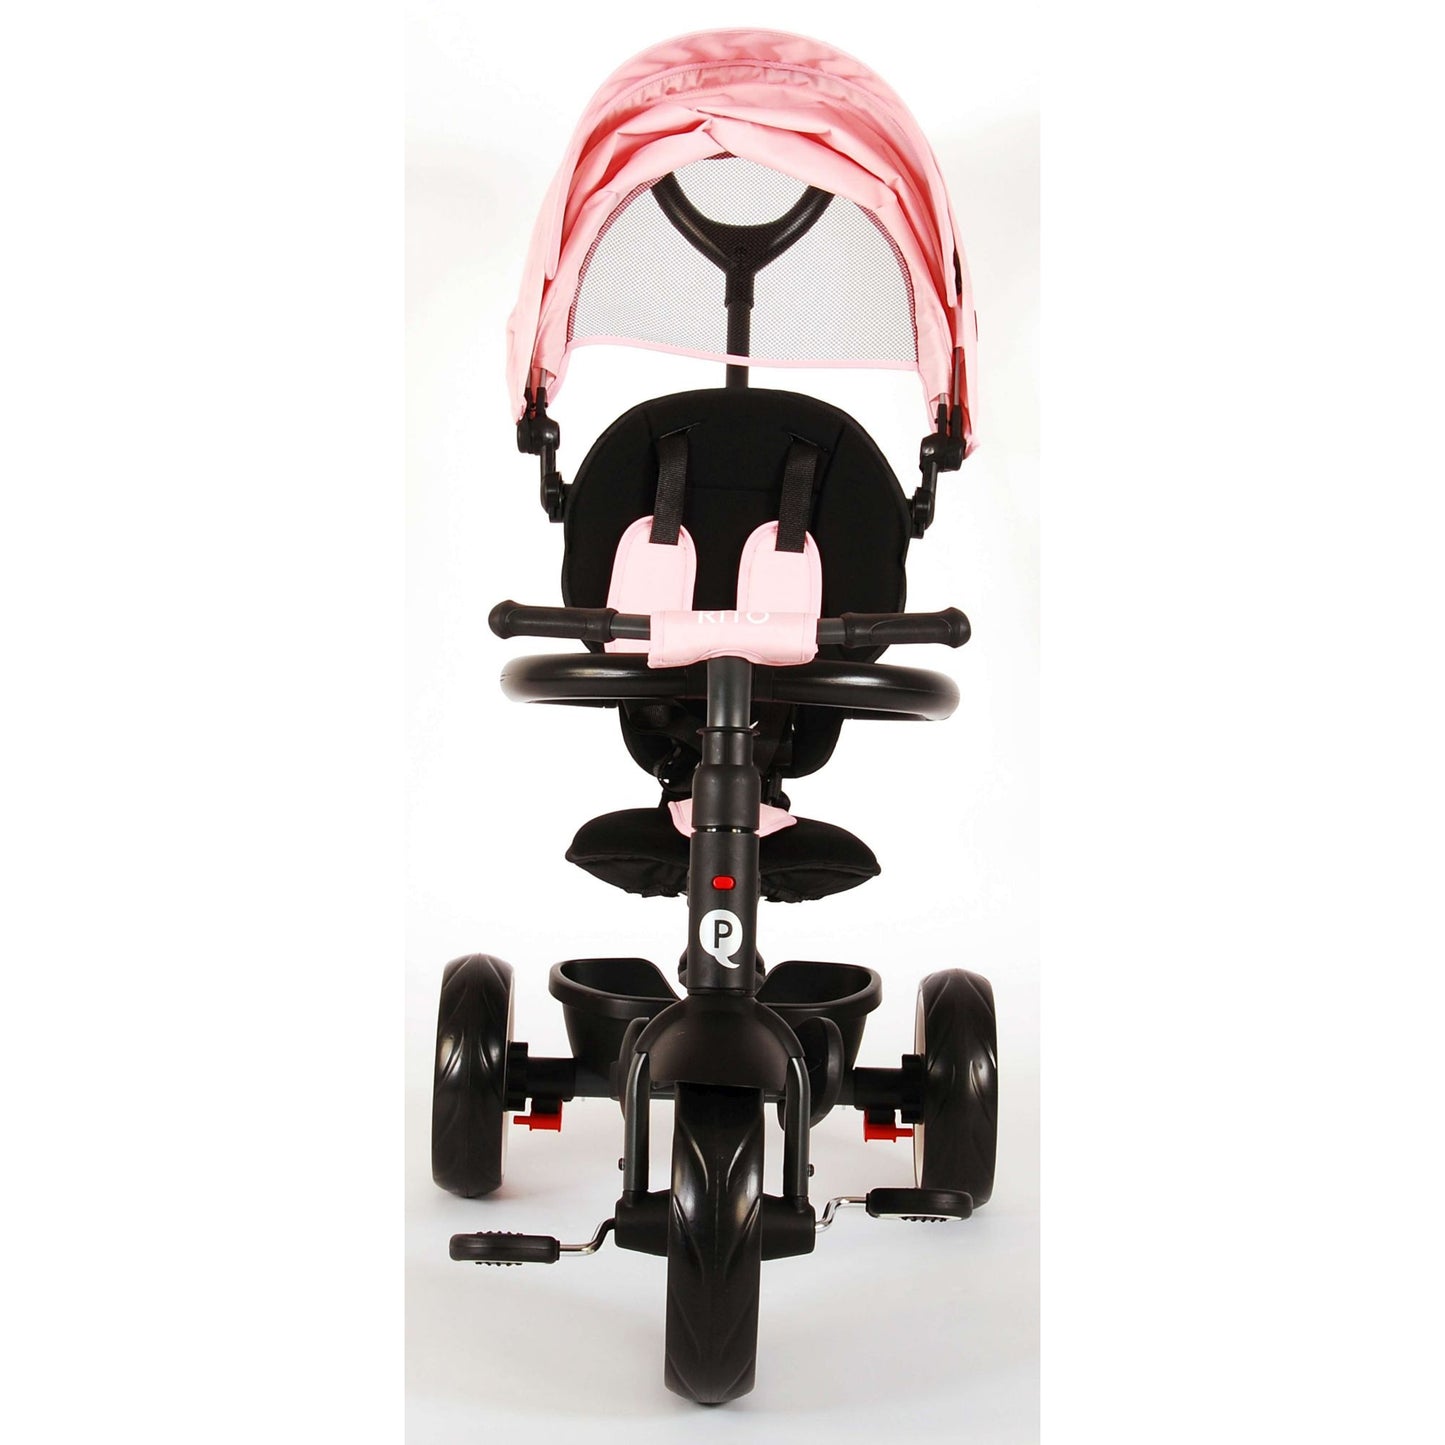 Rito Deluxe 3 in 1 driewieler Junior Roze Zwart